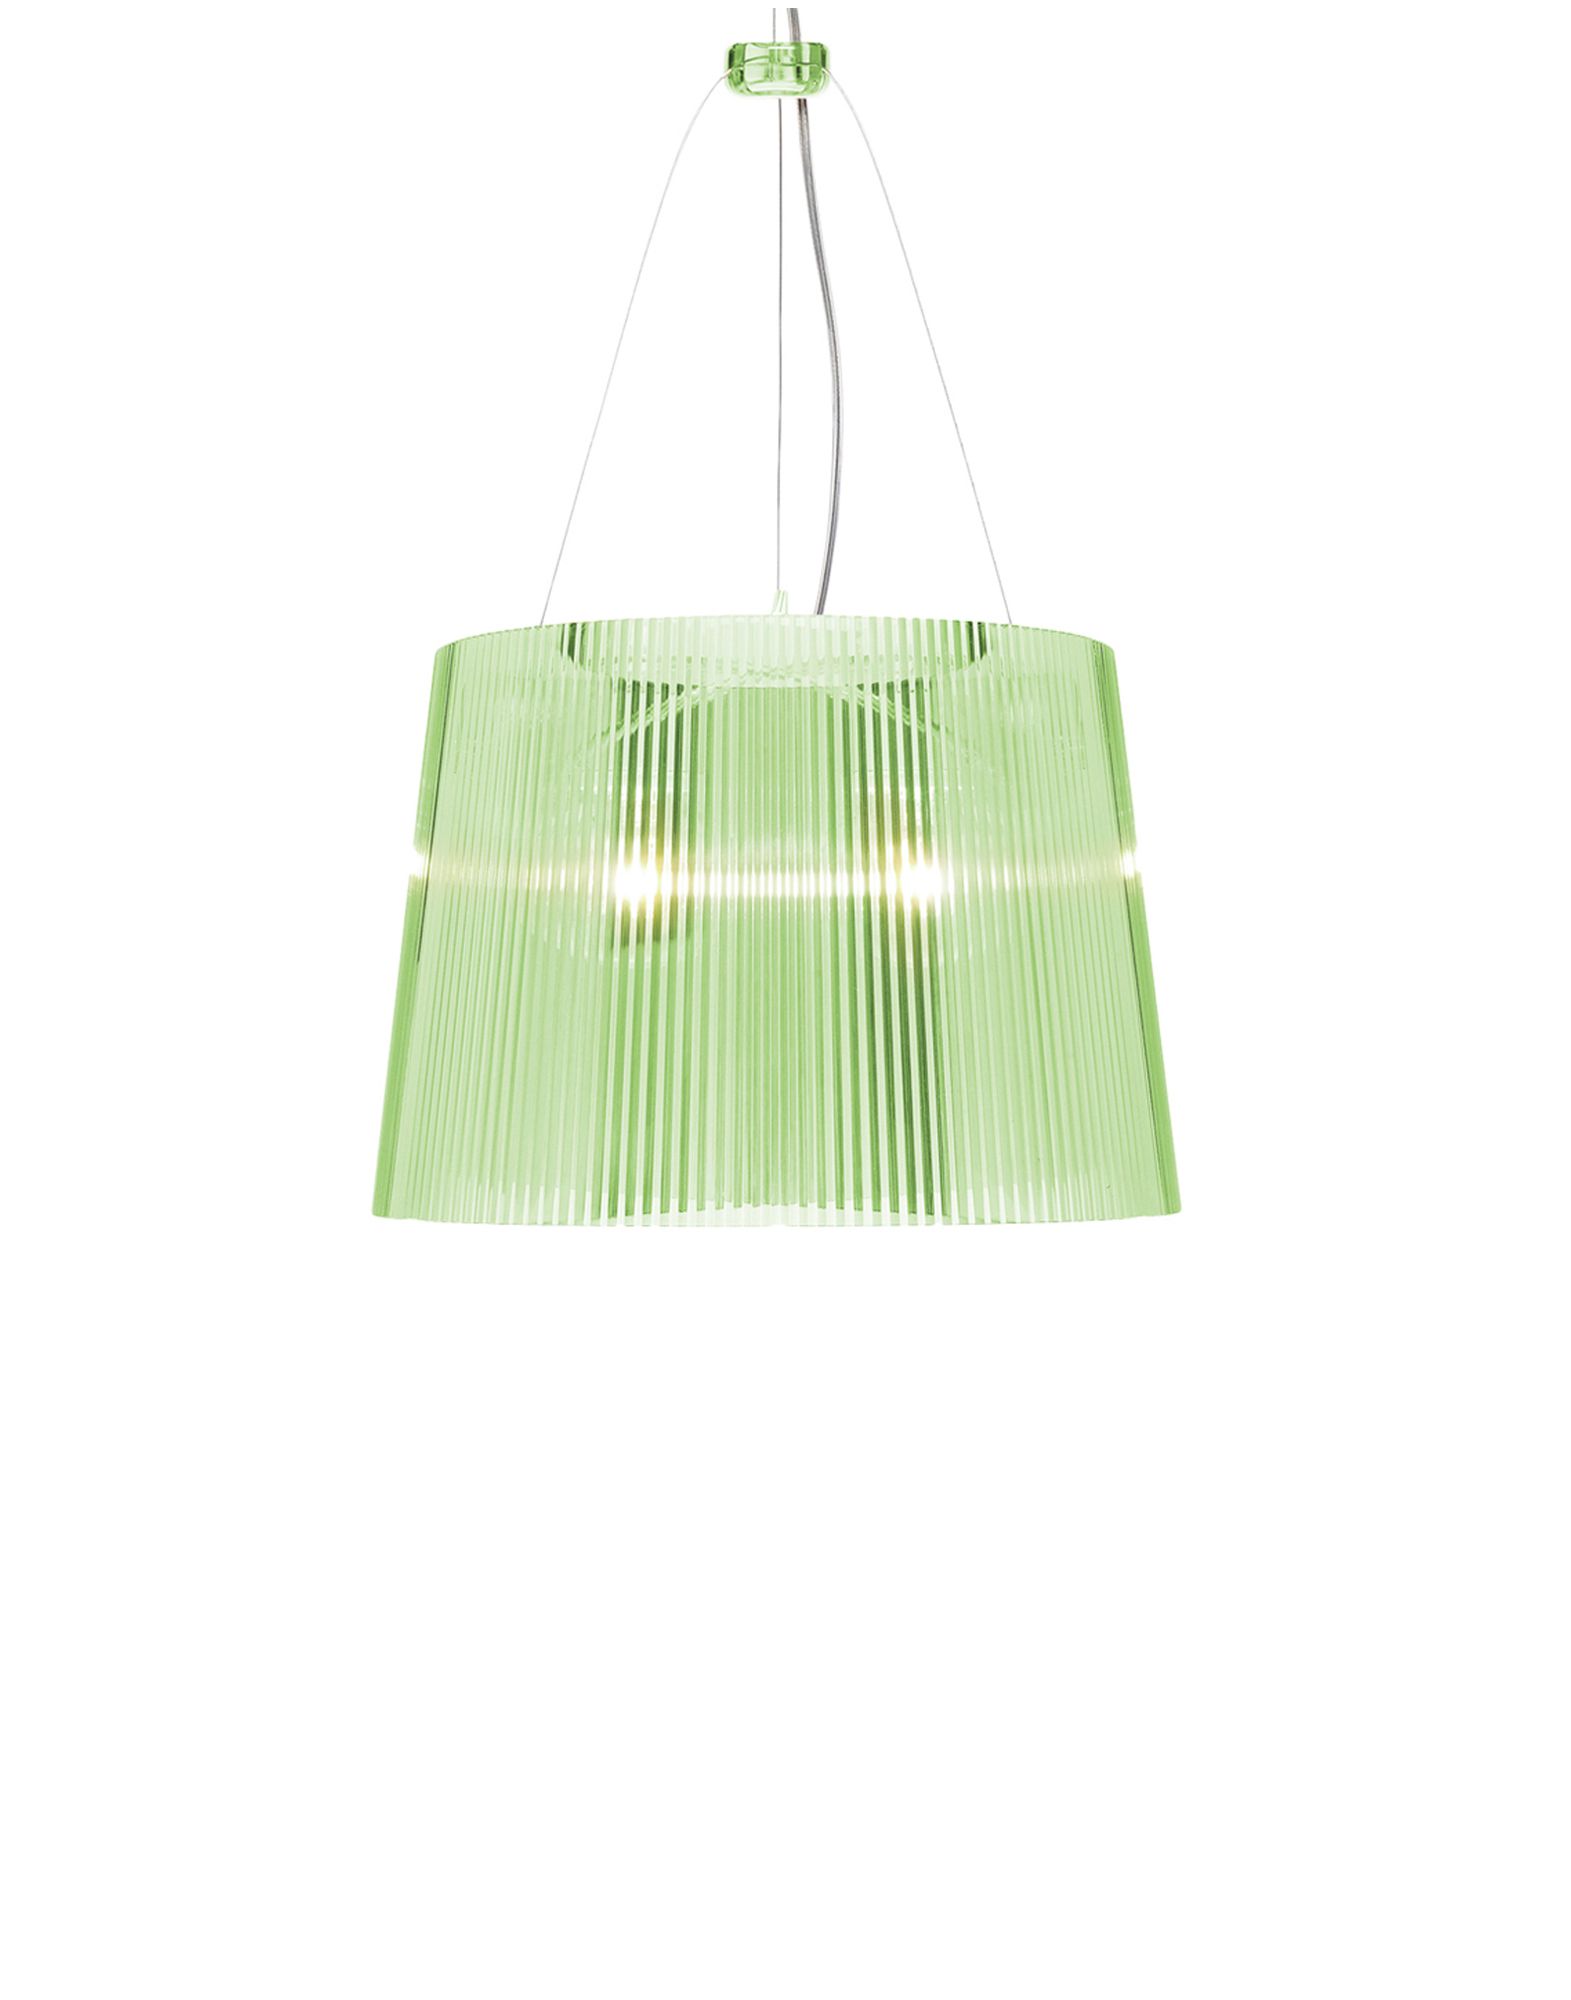 Suspensie Kartell Ge’ design Ferruccio Laviani E27 max 70W h37cm verde transparent 70W